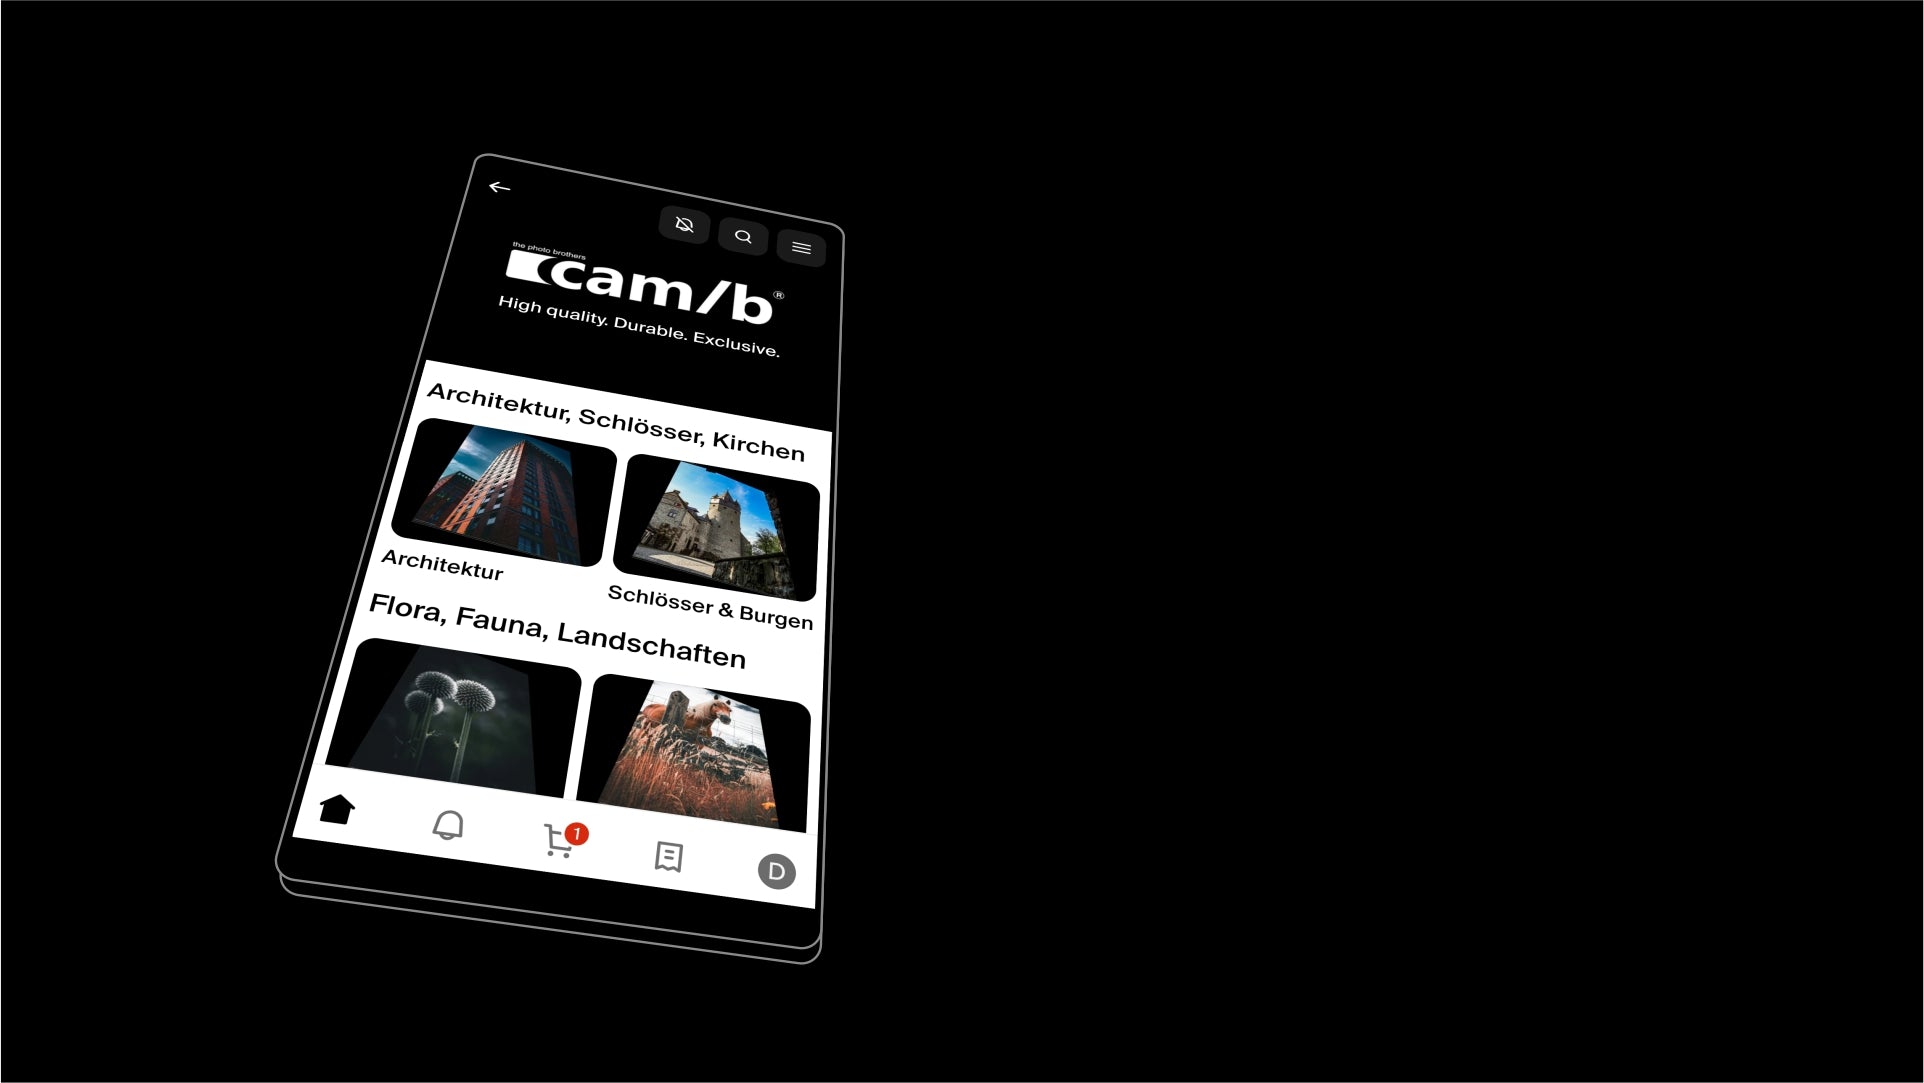 Bild: 3D Ansicht eines Smartphones mit shop.app